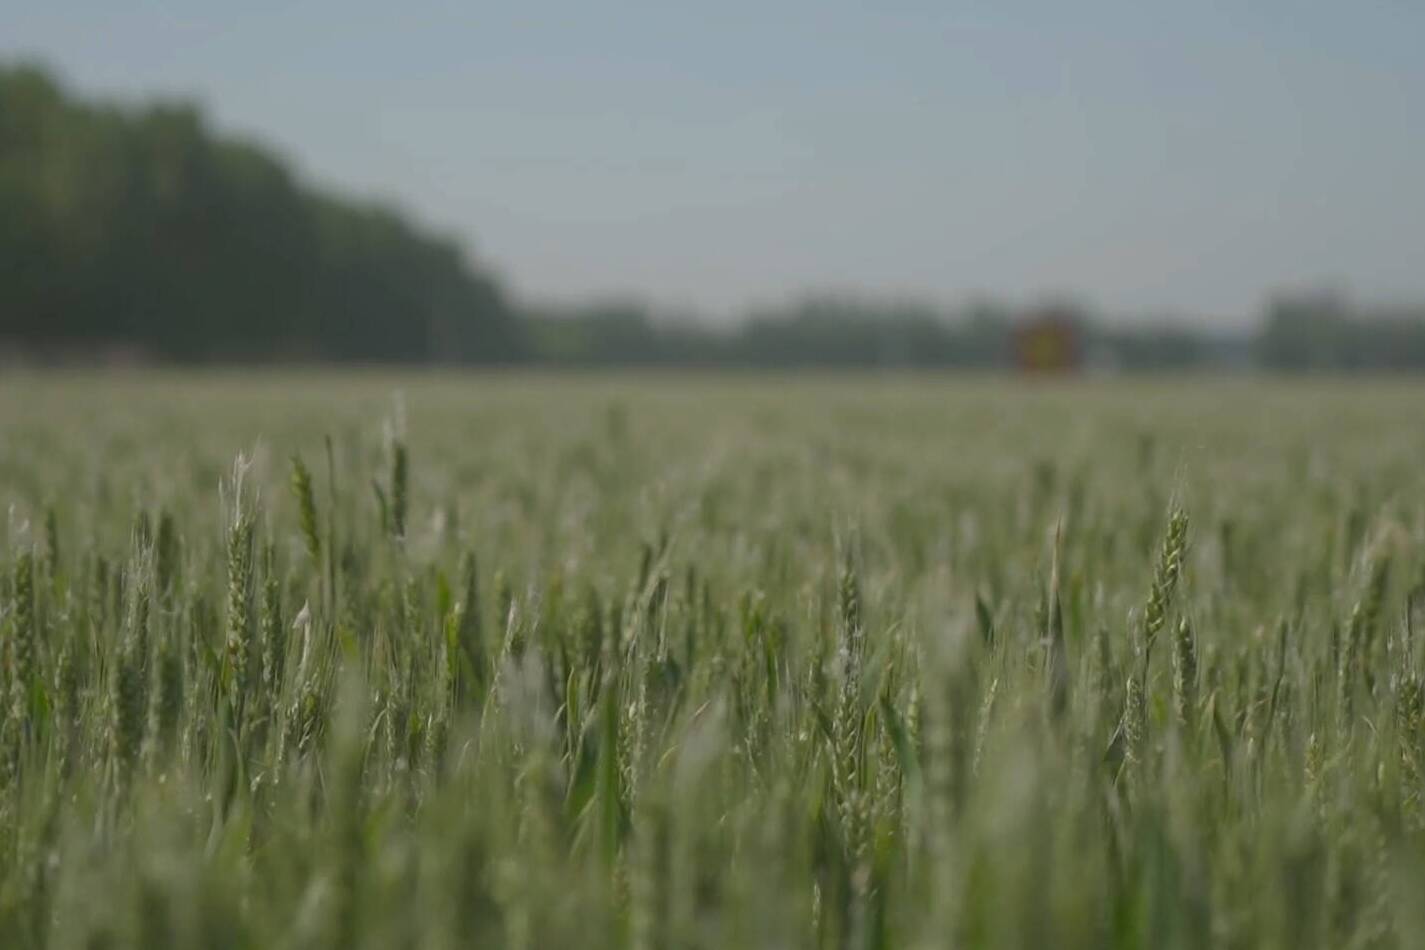 冬小麦“4422”绿色高产模式观摩会走进德州天衢新区